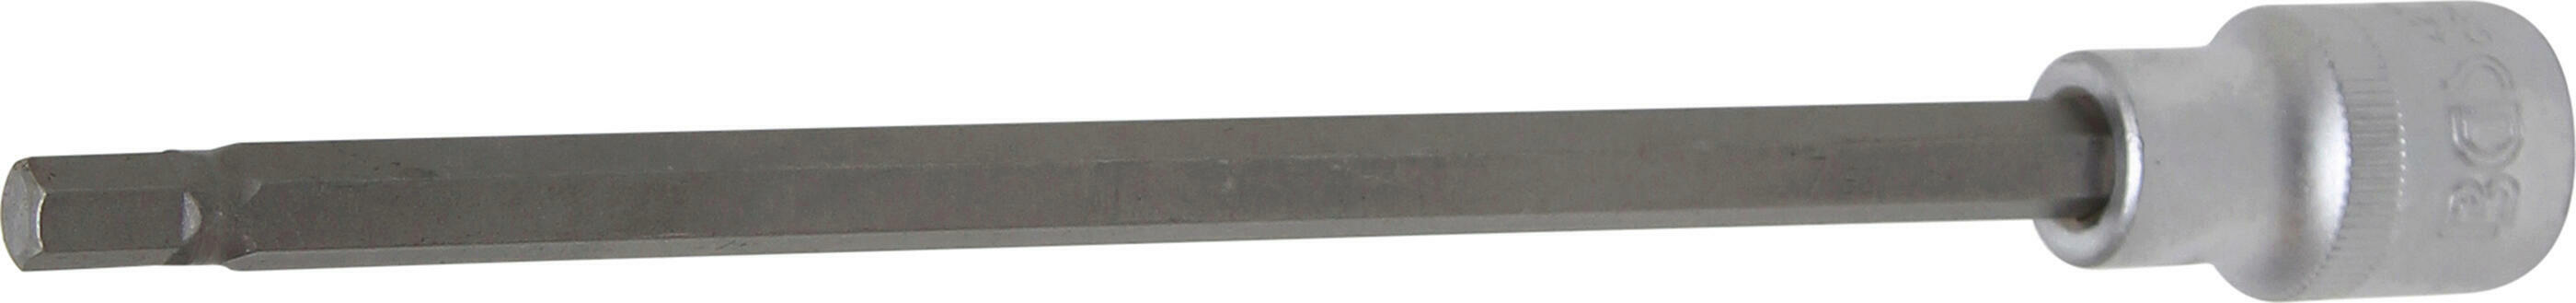 Bit-Einsatz | Länge 200 mm | Antrieb Innenvierkant 12,5 mm (1/2") | Innensechskant 7 mm